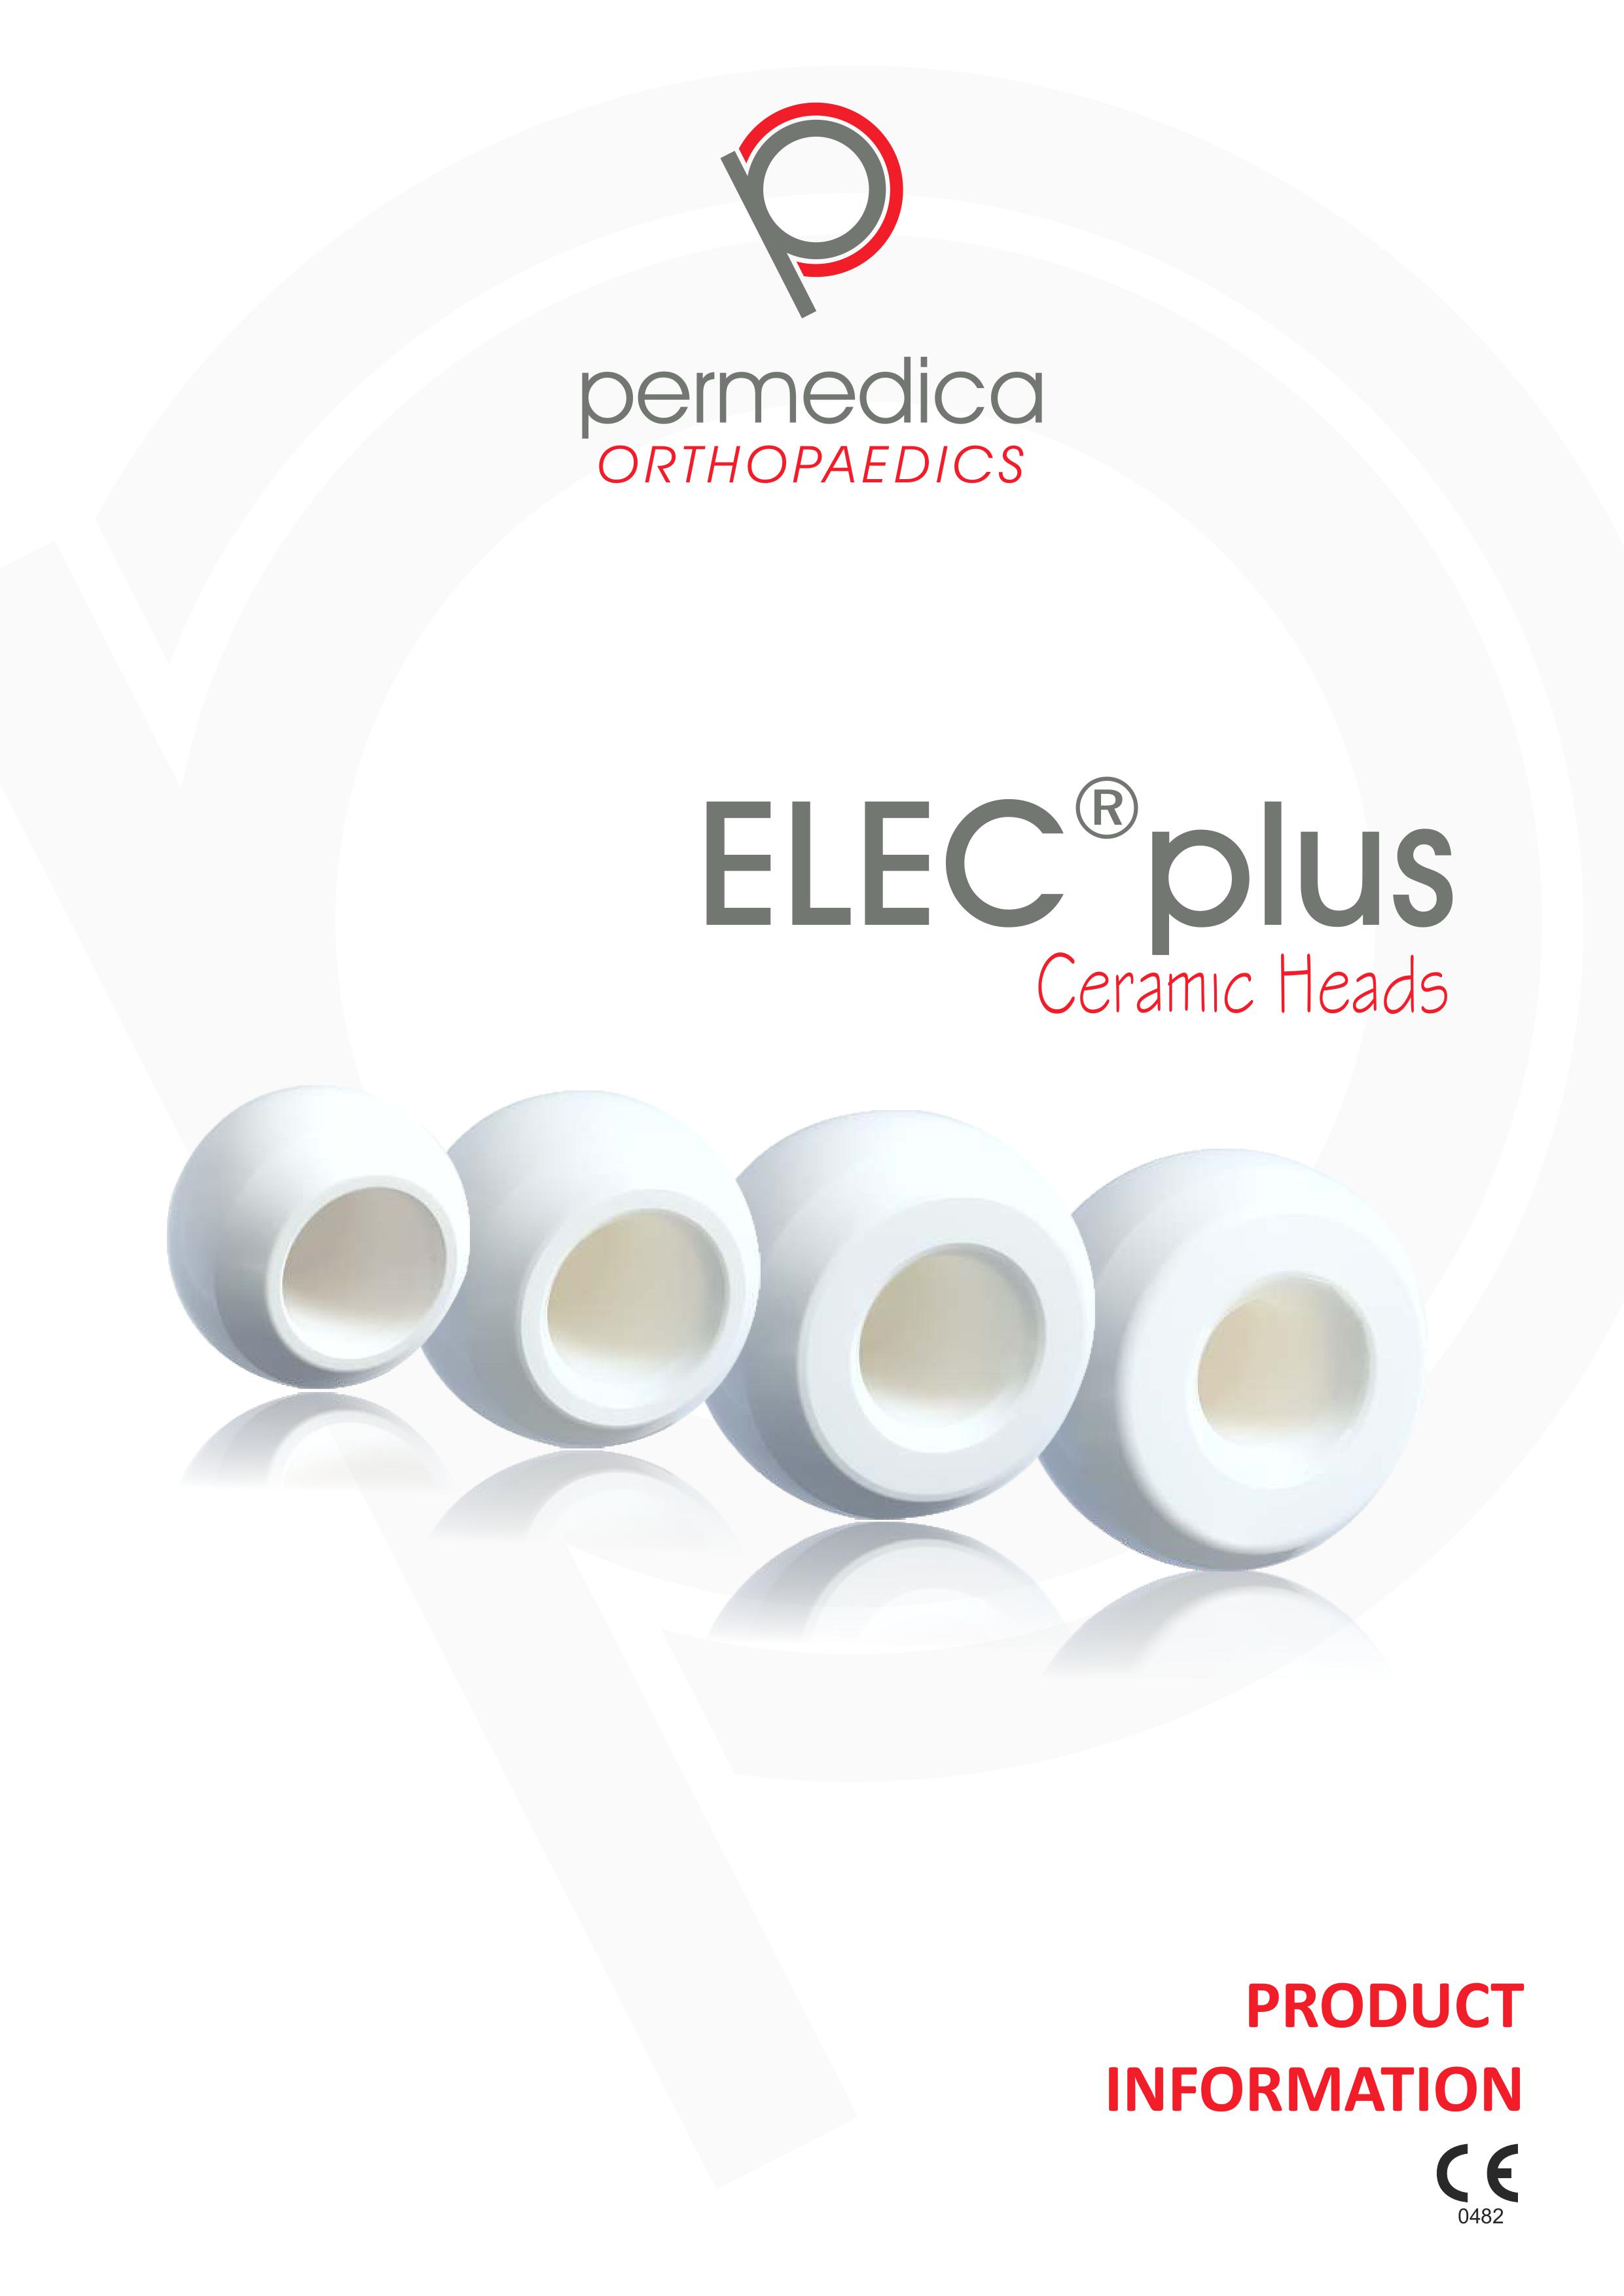 ELEC plus Ceramic Heads